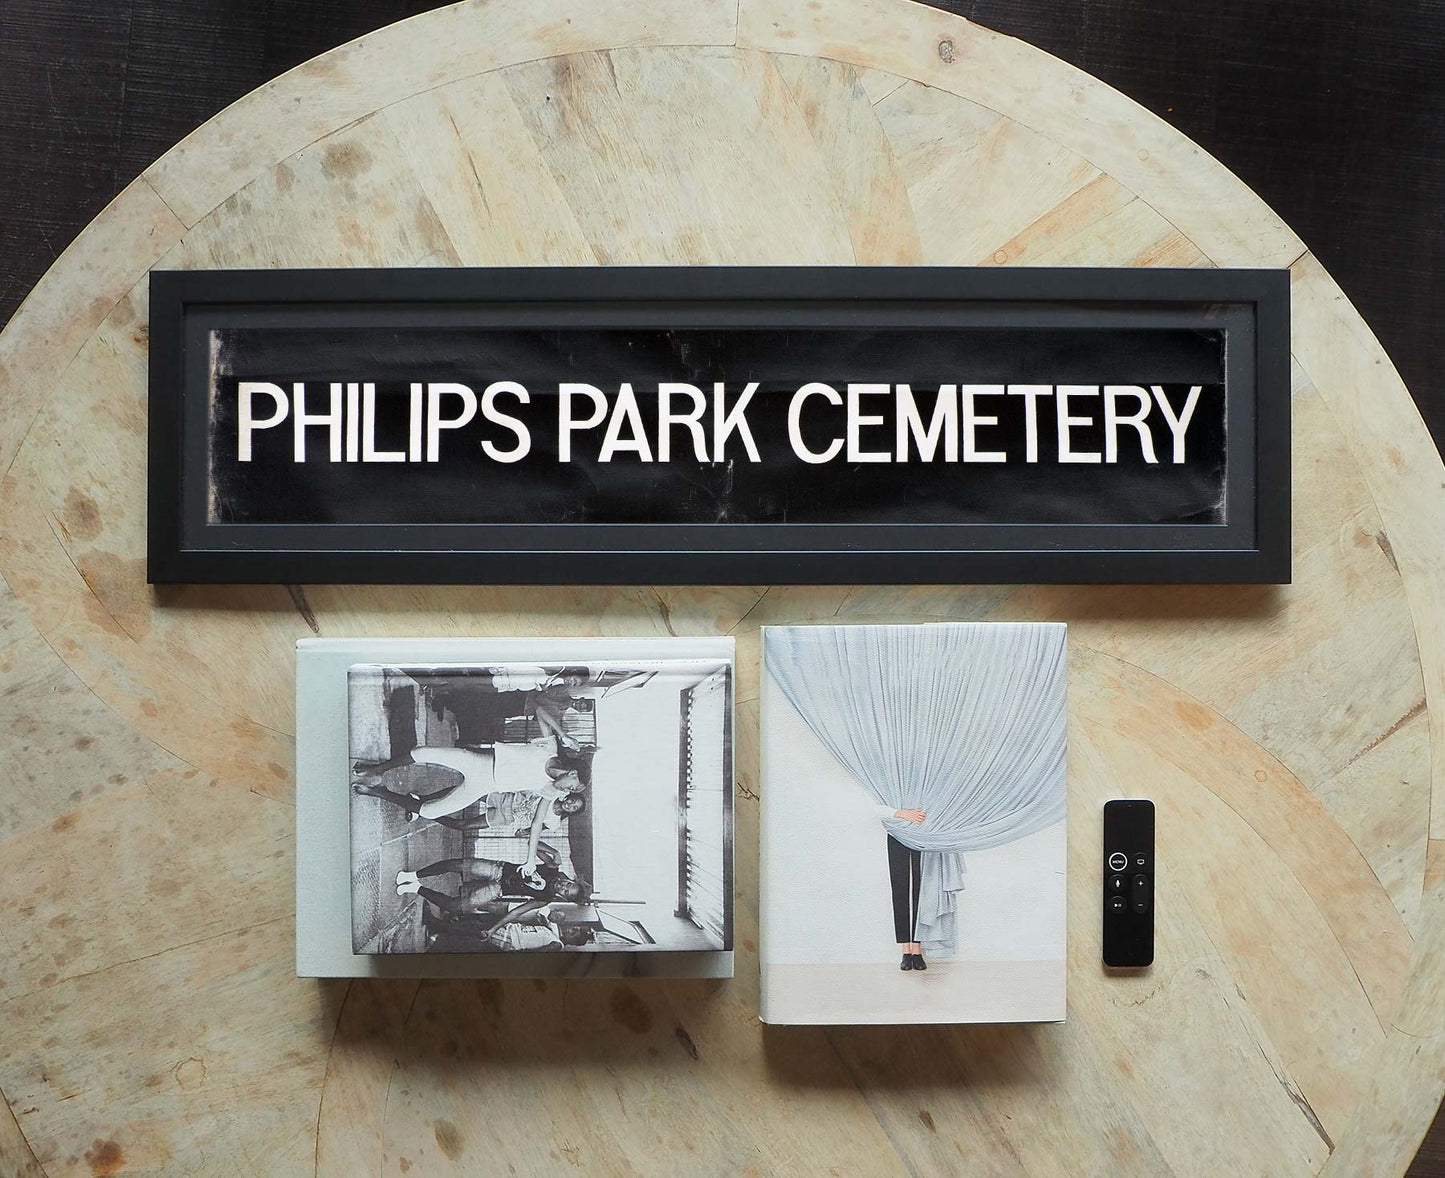 Philips Park Cemetery Framed Bus Blind